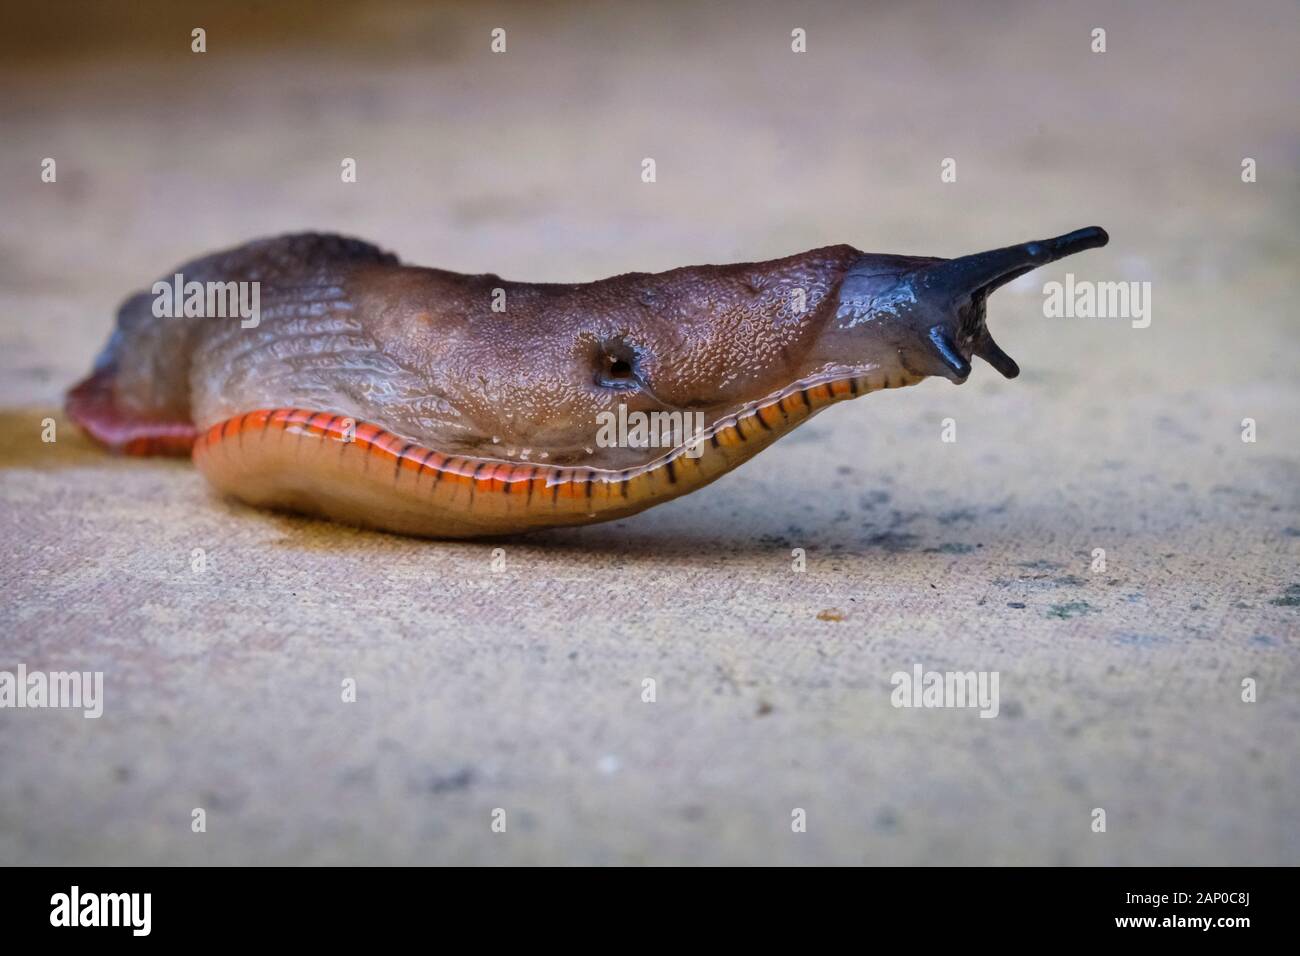 A slug crawls across a slab in a garden. Stock Photo